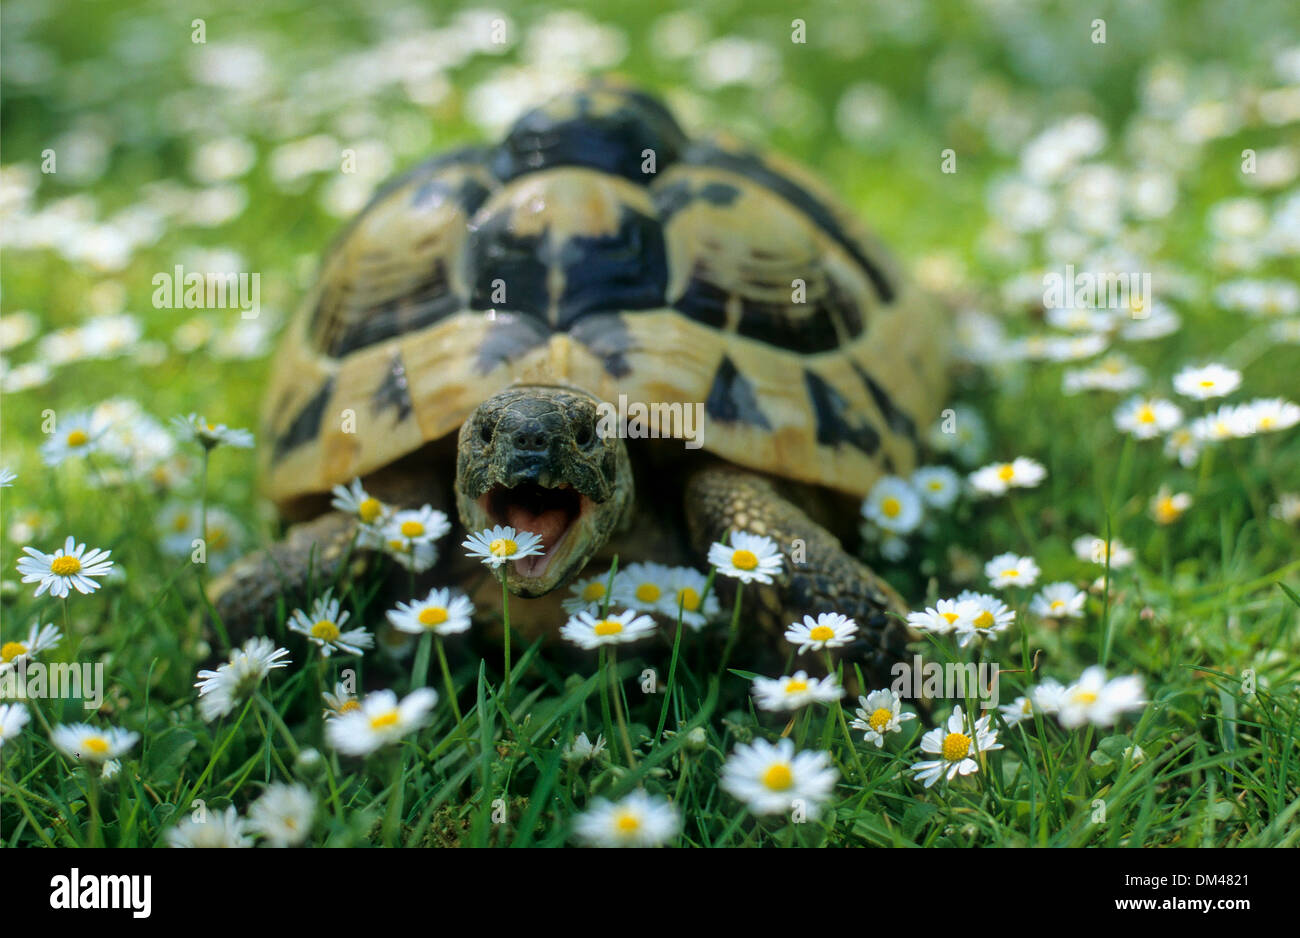 Hermann's tortoise (Testudo hermanni), Griechische Landschildkröte (Testudo hermanni) auf Wiese Stock Photo